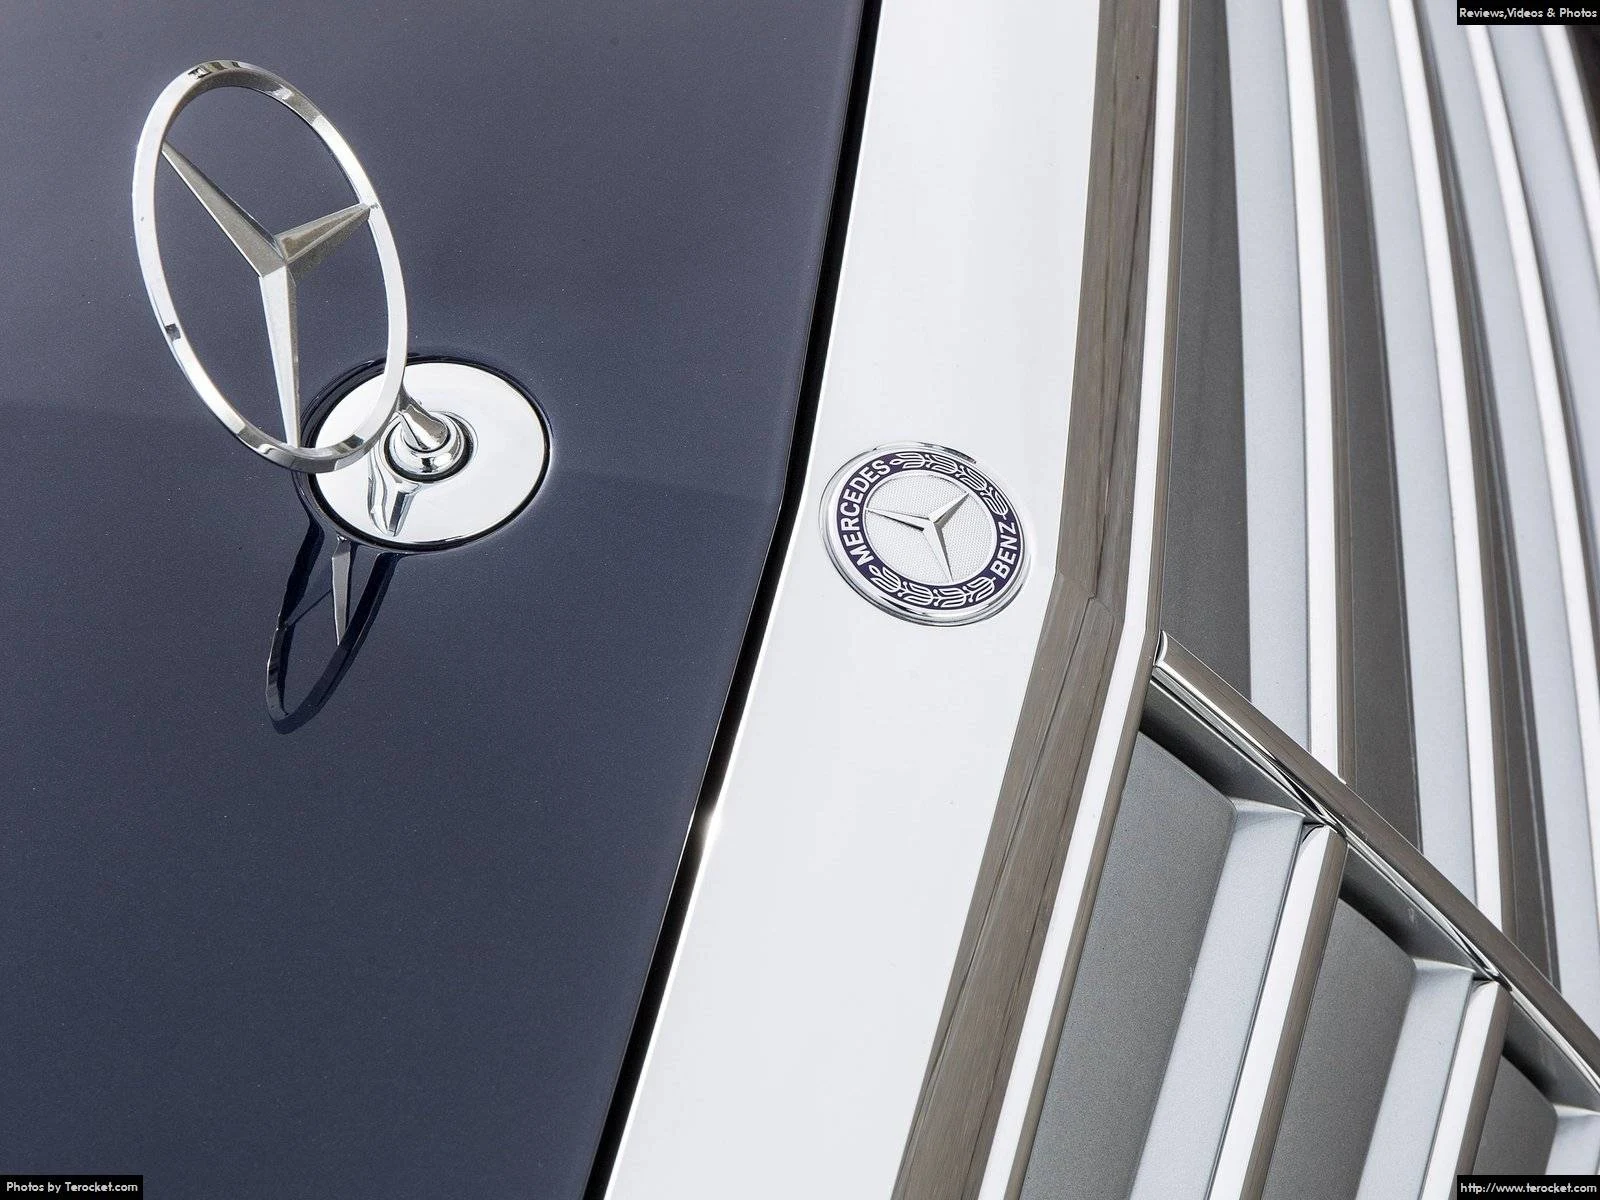 Hình ảnh xe ô tô Mercedes-Benz C350e 2017 & nội ngoại thất